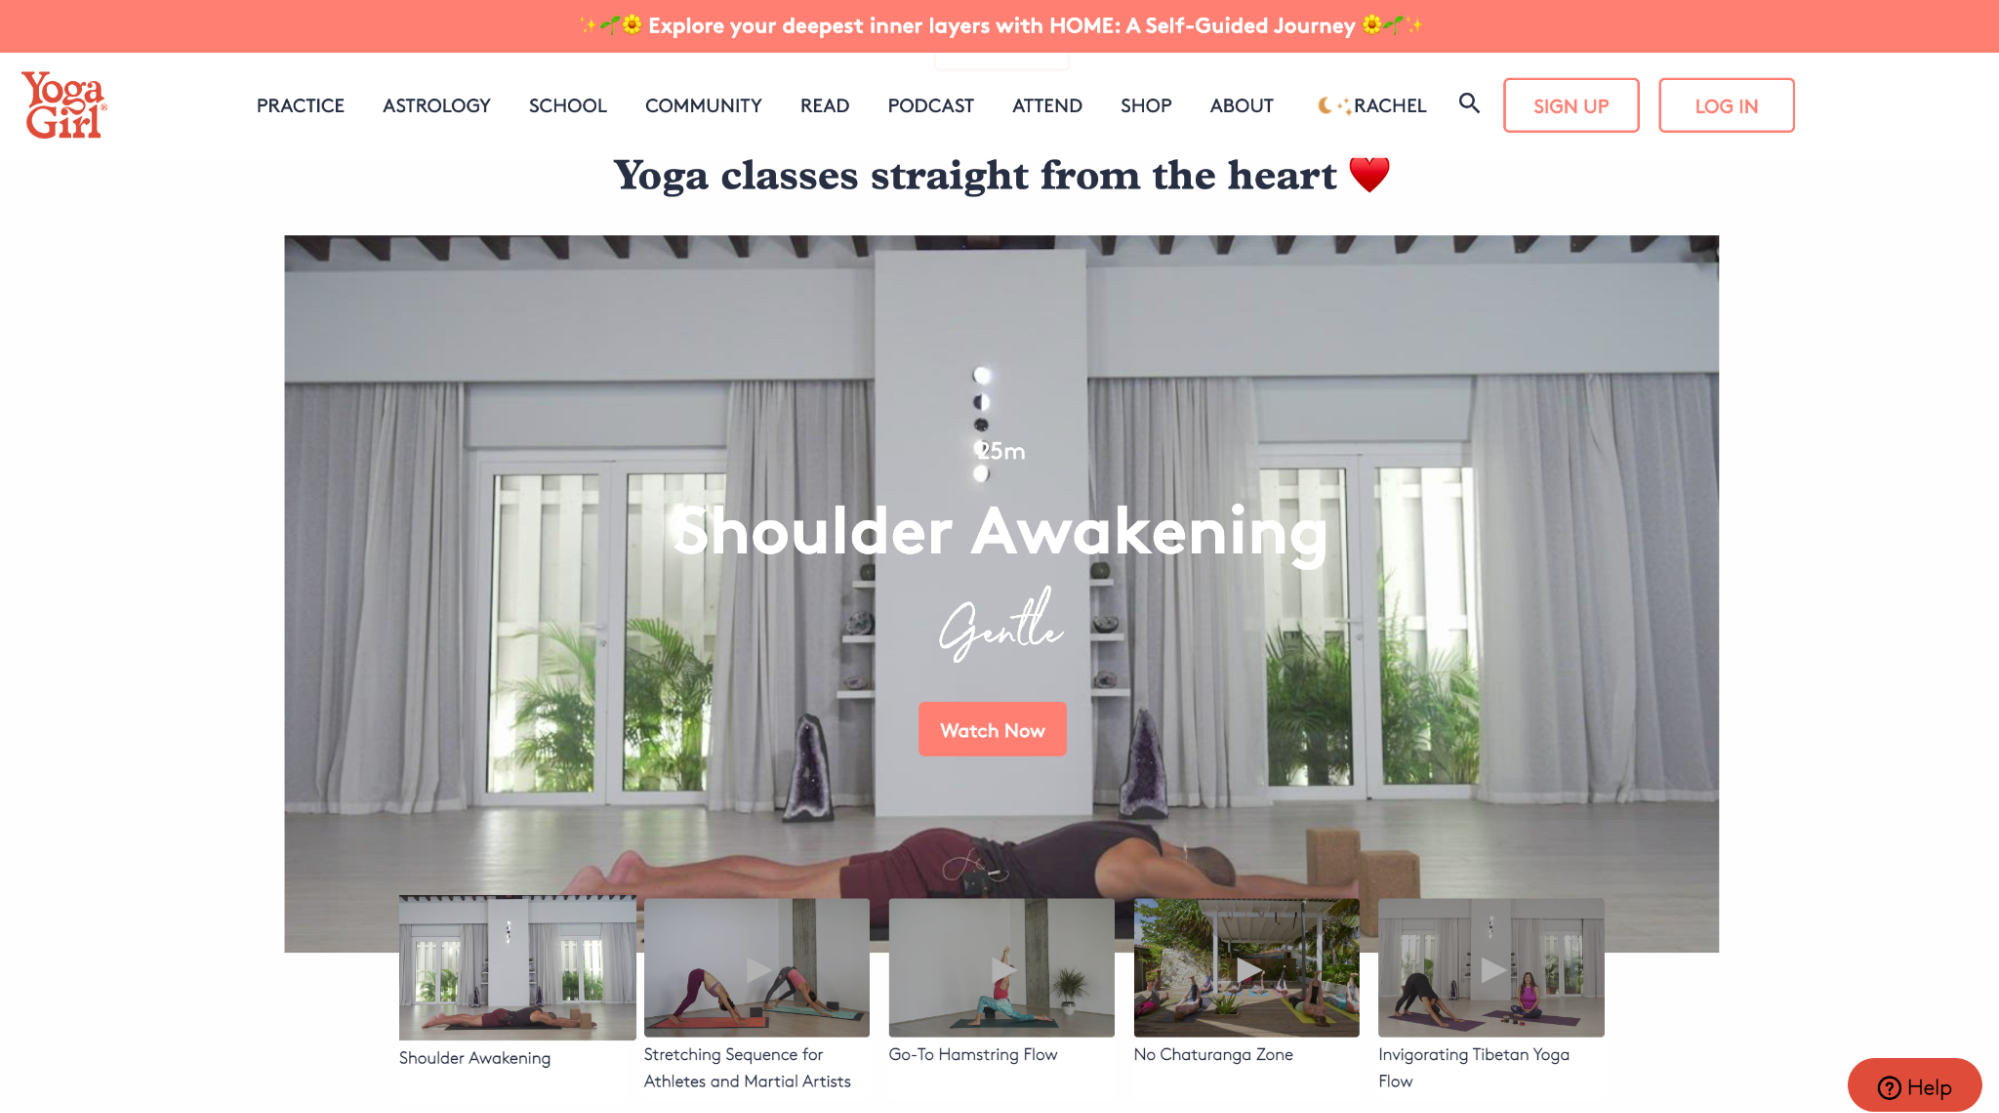 Yoga Girl headless commerce site headless commerce platforms